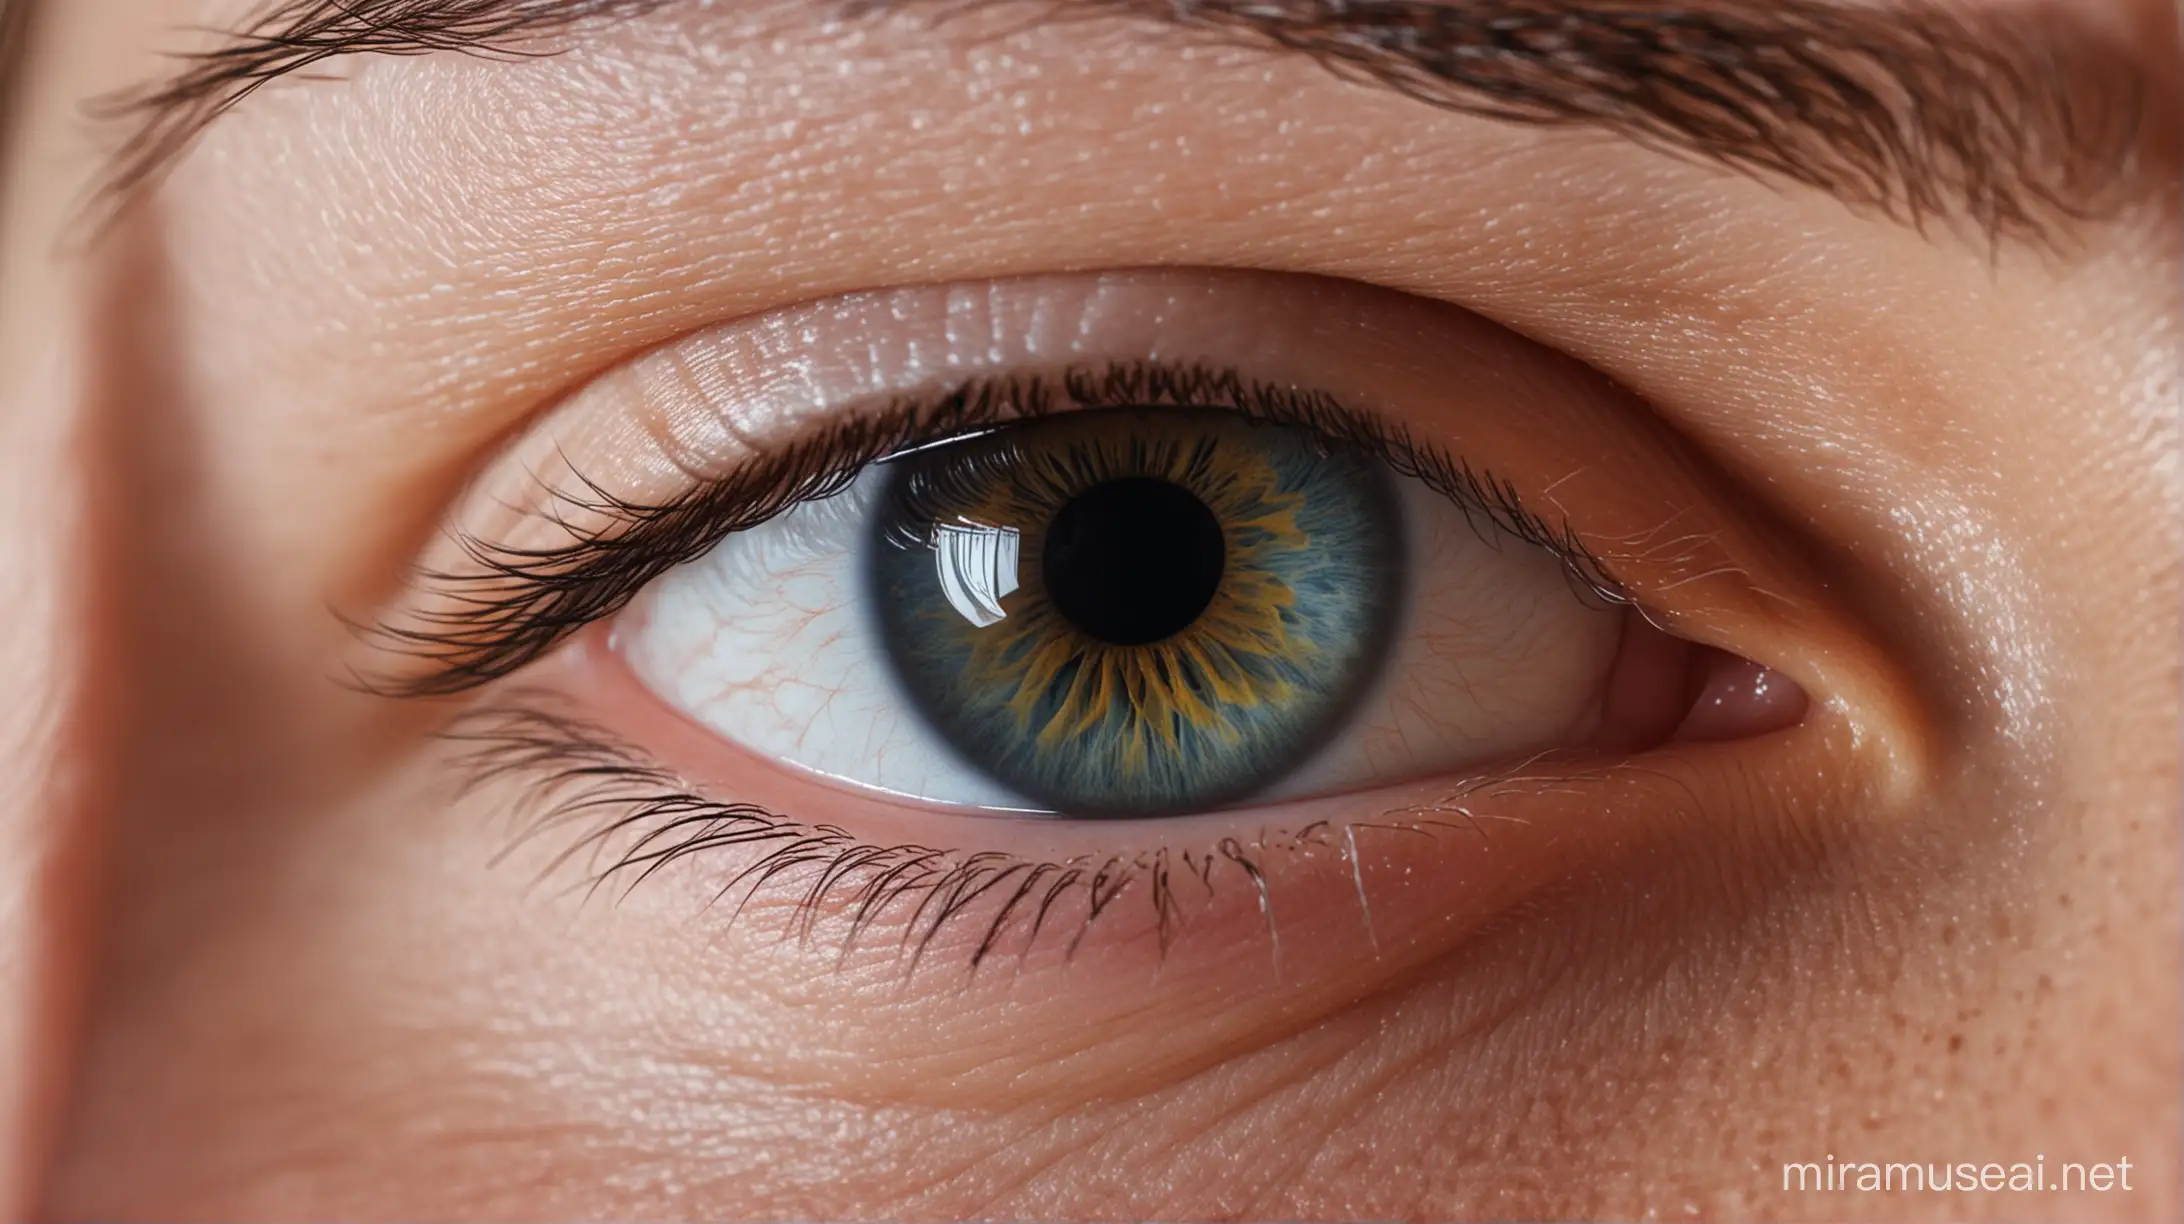 Human Eye Closeup without Light Reflection